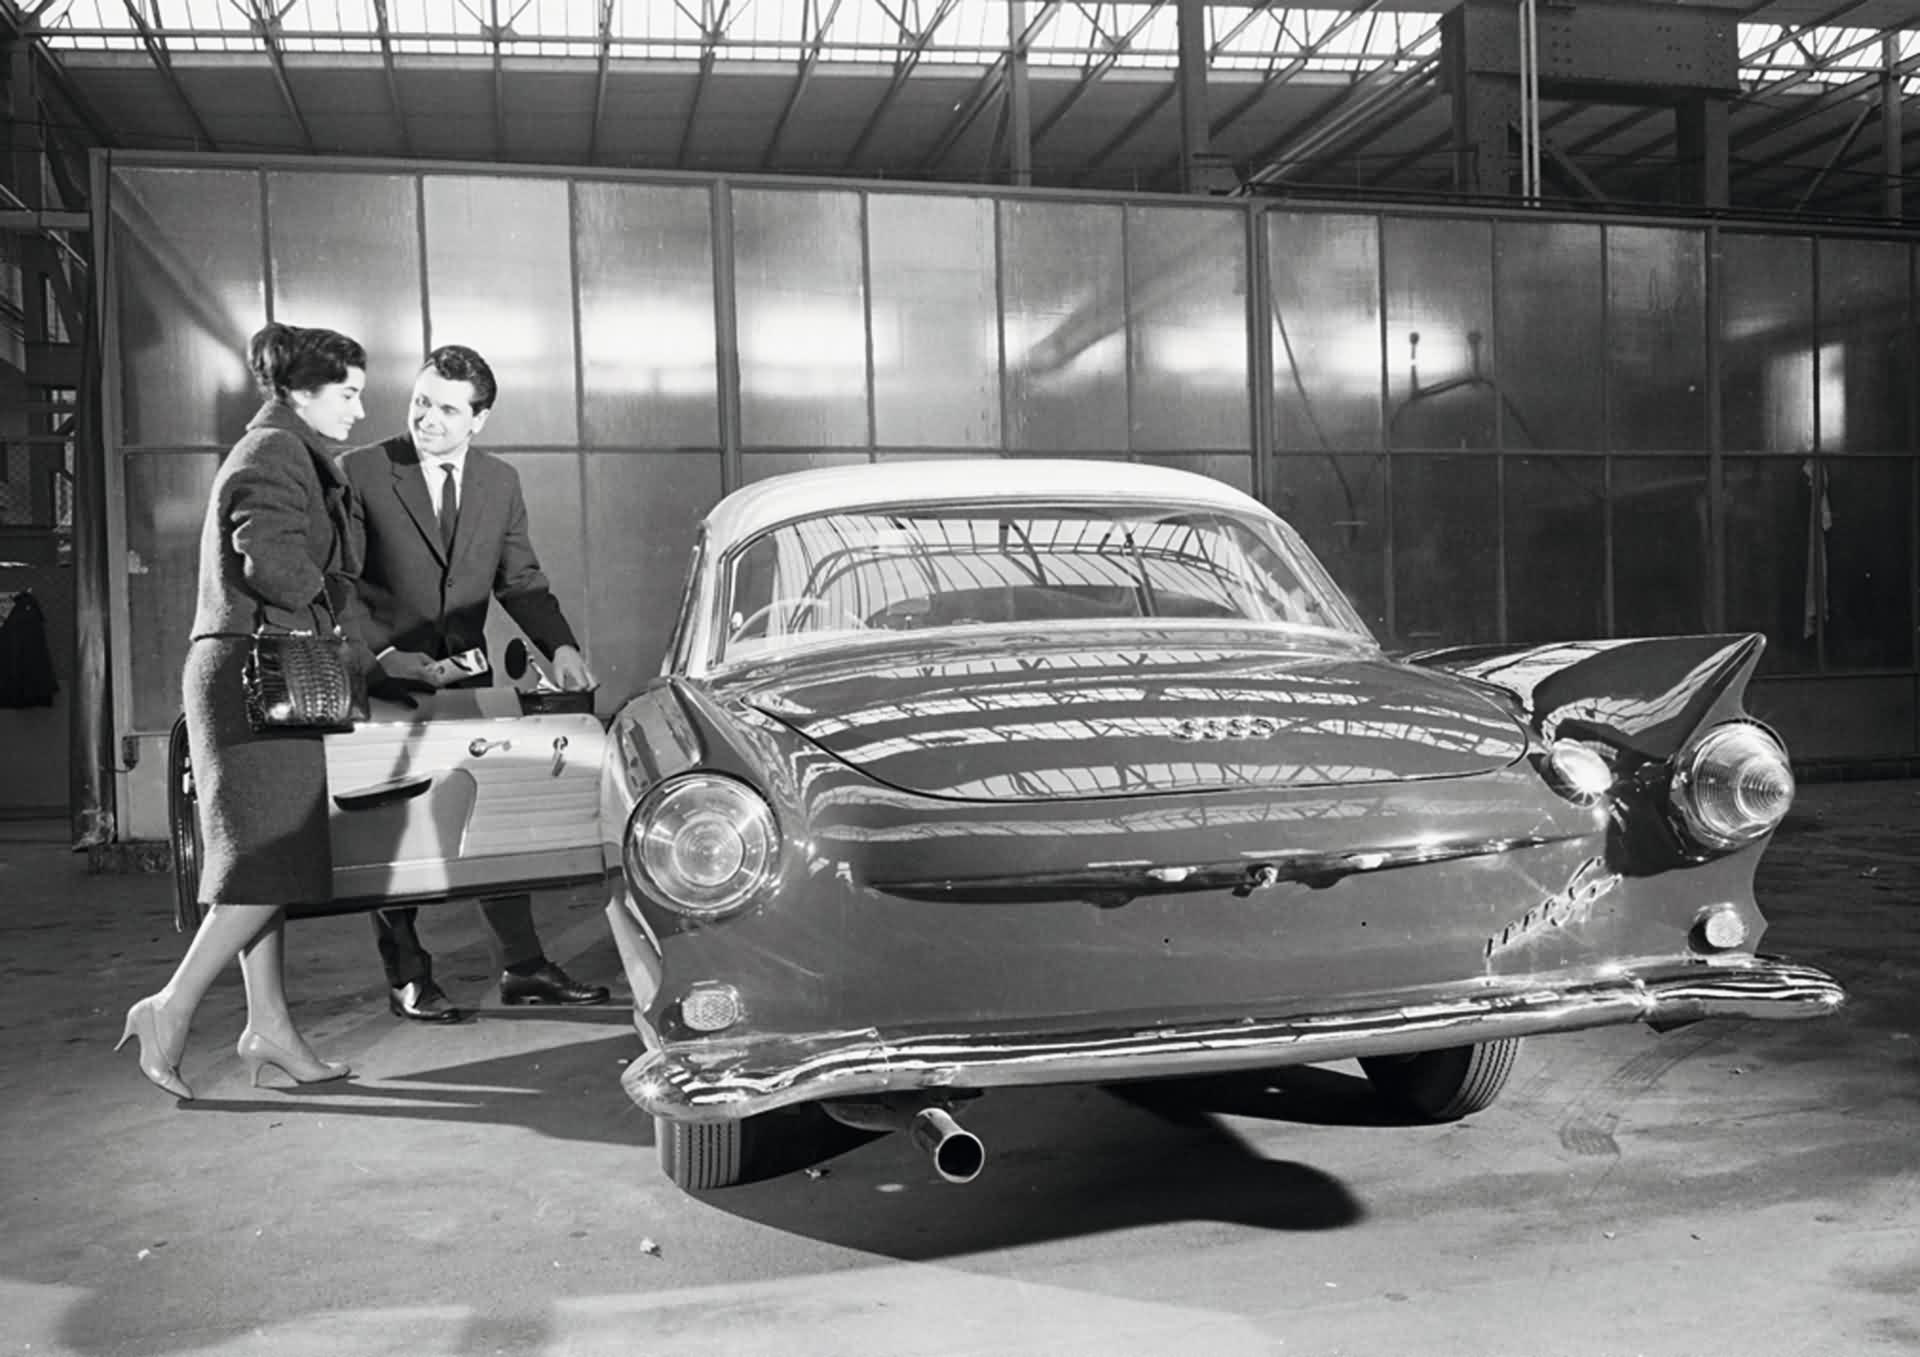 Автоюнион. Auto Union 1000 SP Coupe 1958. Auto Union 1000sp 1963. "Auto Union" "1000 SP" "1965" vu. "Auto Union" "1000 SP" "1962" IH.